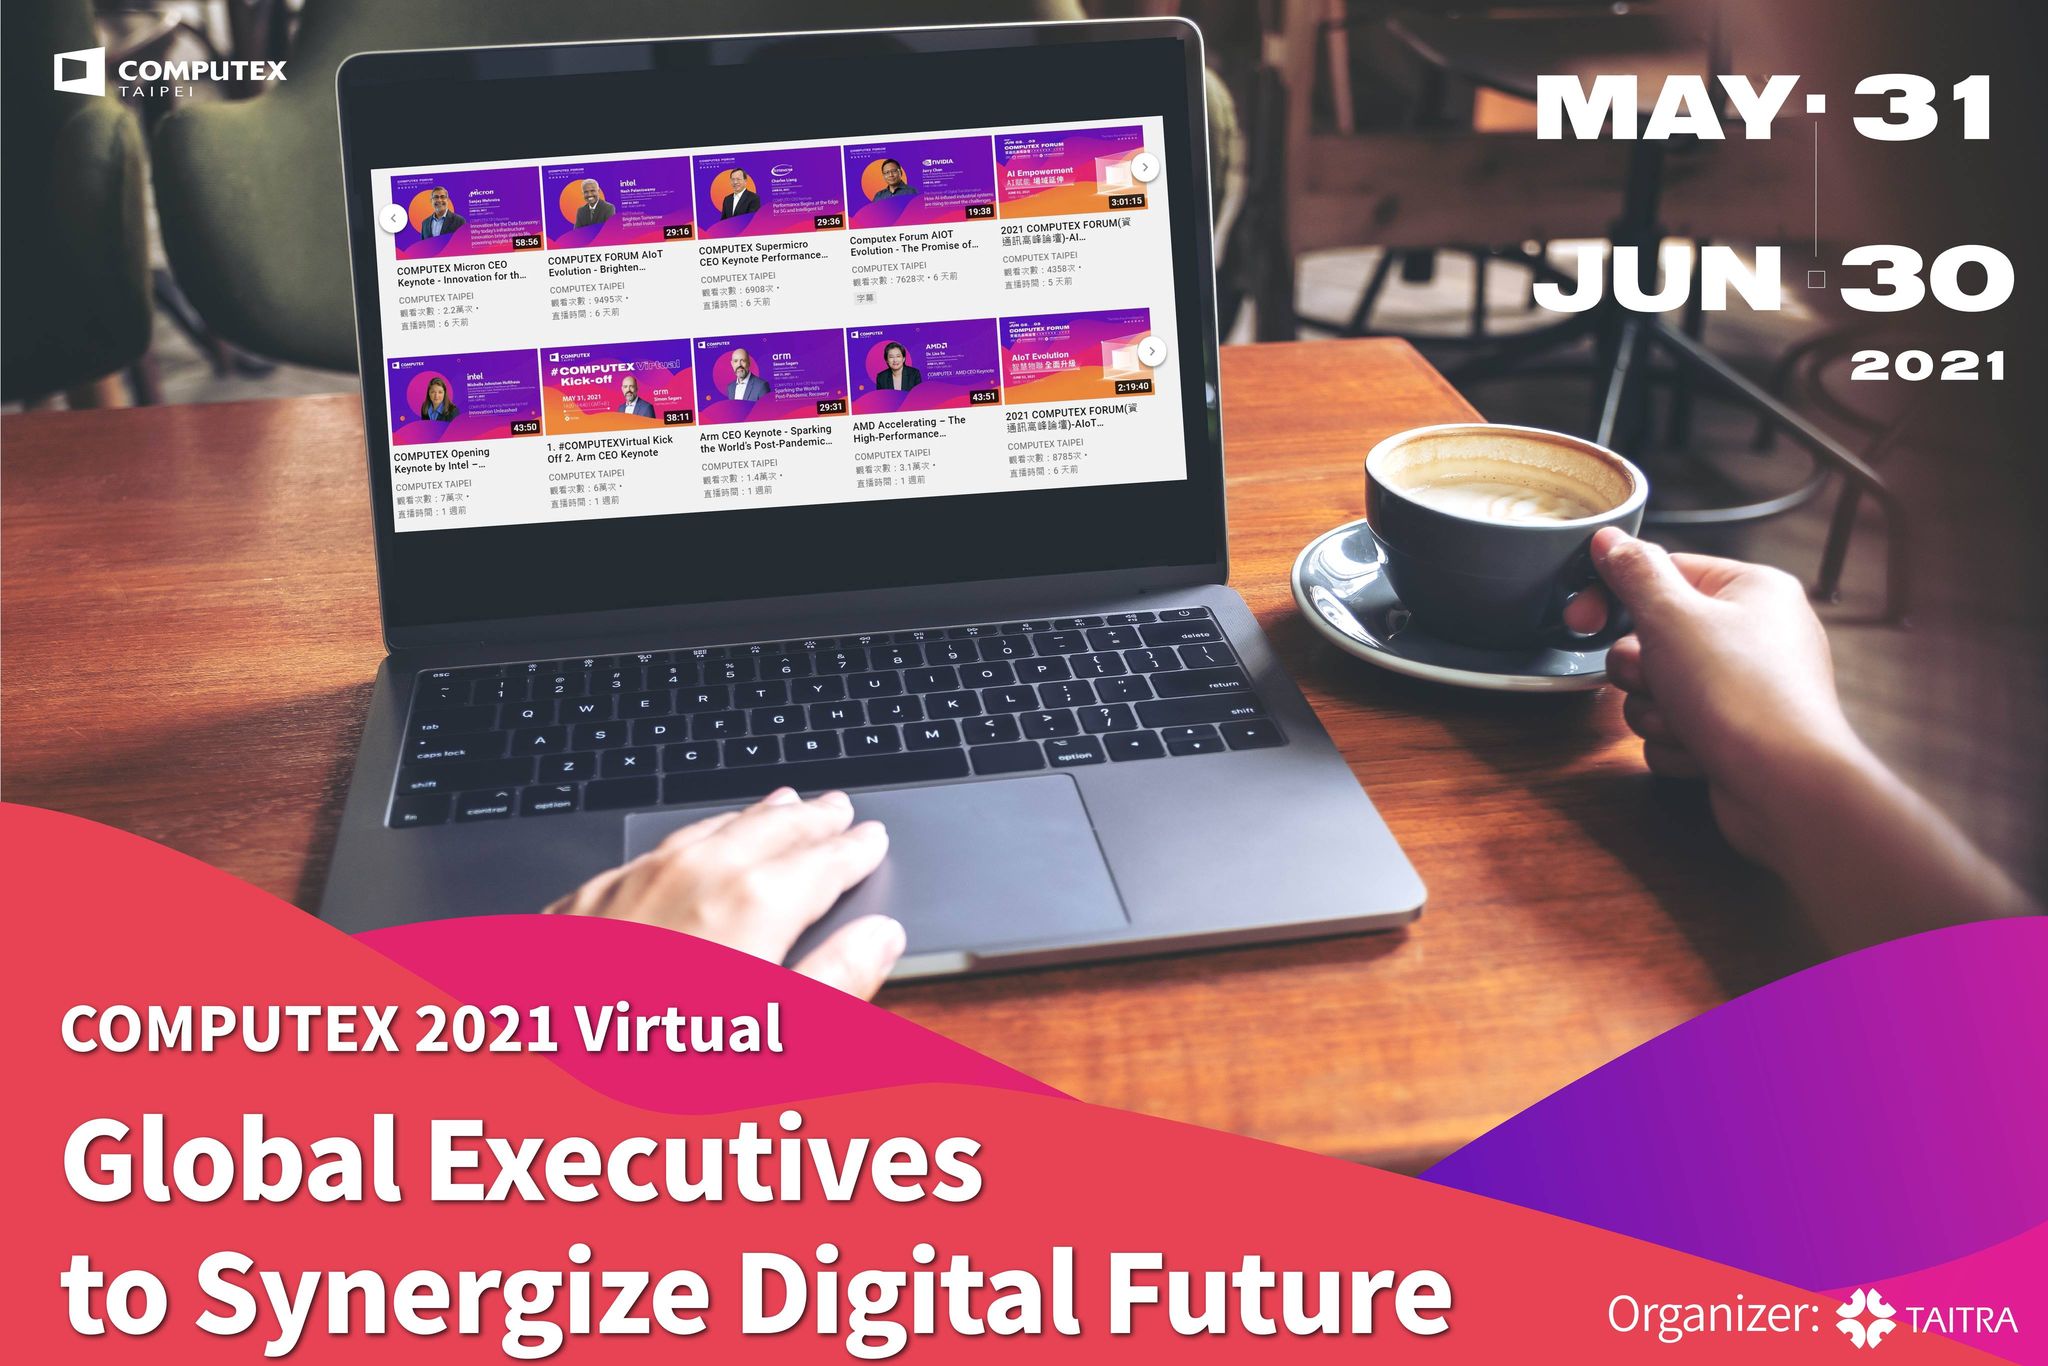 TAITRA tập hợp các CEO toàn cầu để hướng về một tương lai kĩ thuật số tổng hợp tại COMPUTEX 2021 Virtual